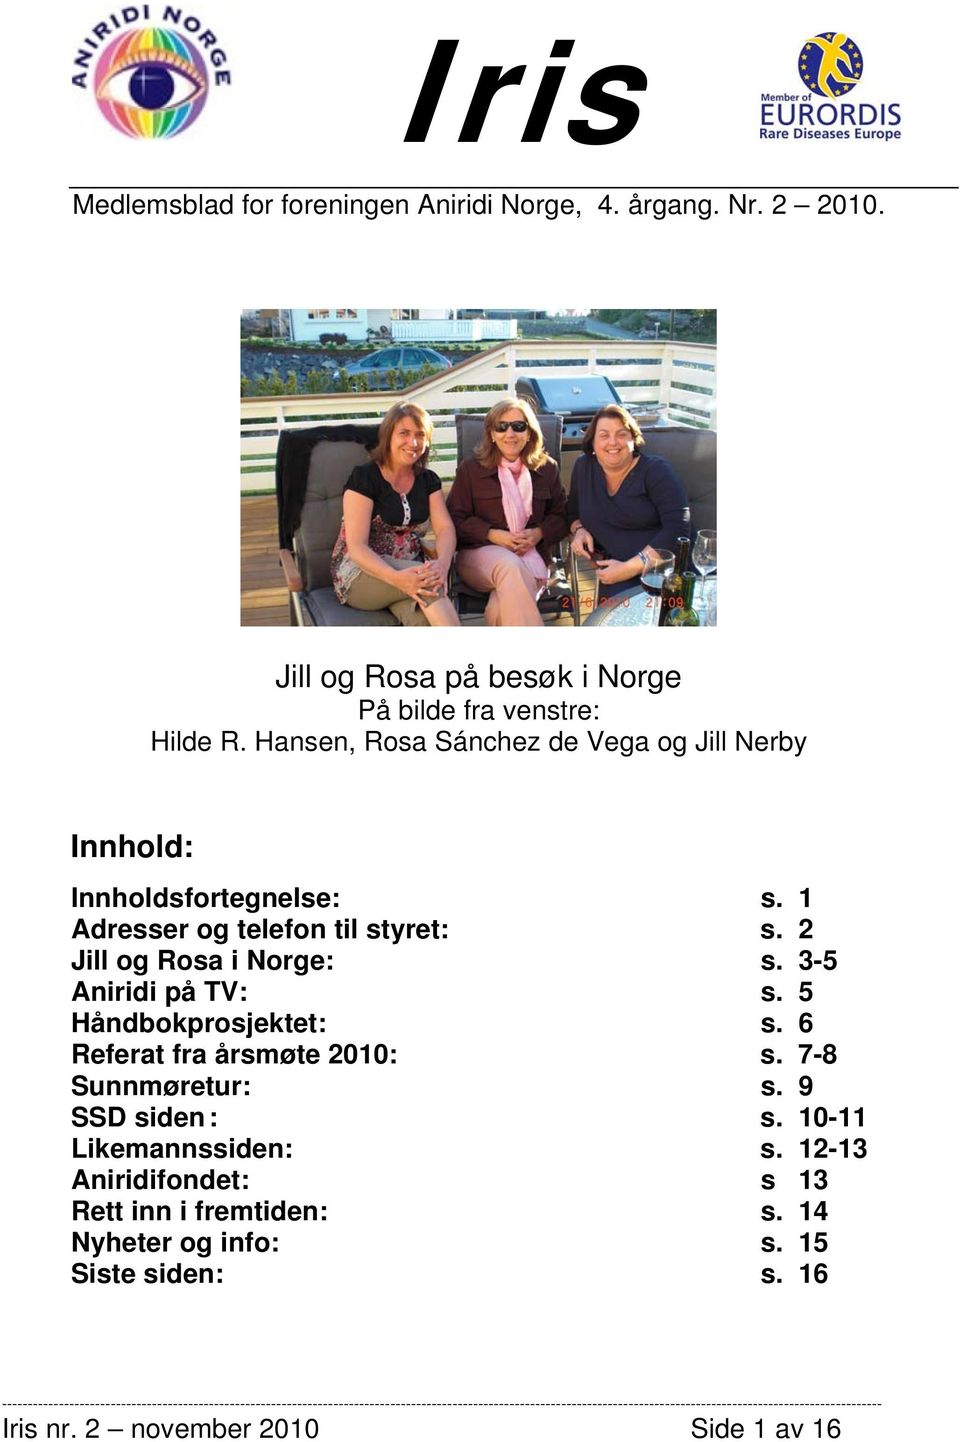 2 Jill og Rosa i Norge: s. 3-5 Aniridi på TV: s. 5 Håndbokprosjektet: s. 6 Referat fra årsmøte 2010: s. 7-8 Sunnmøretur: s.